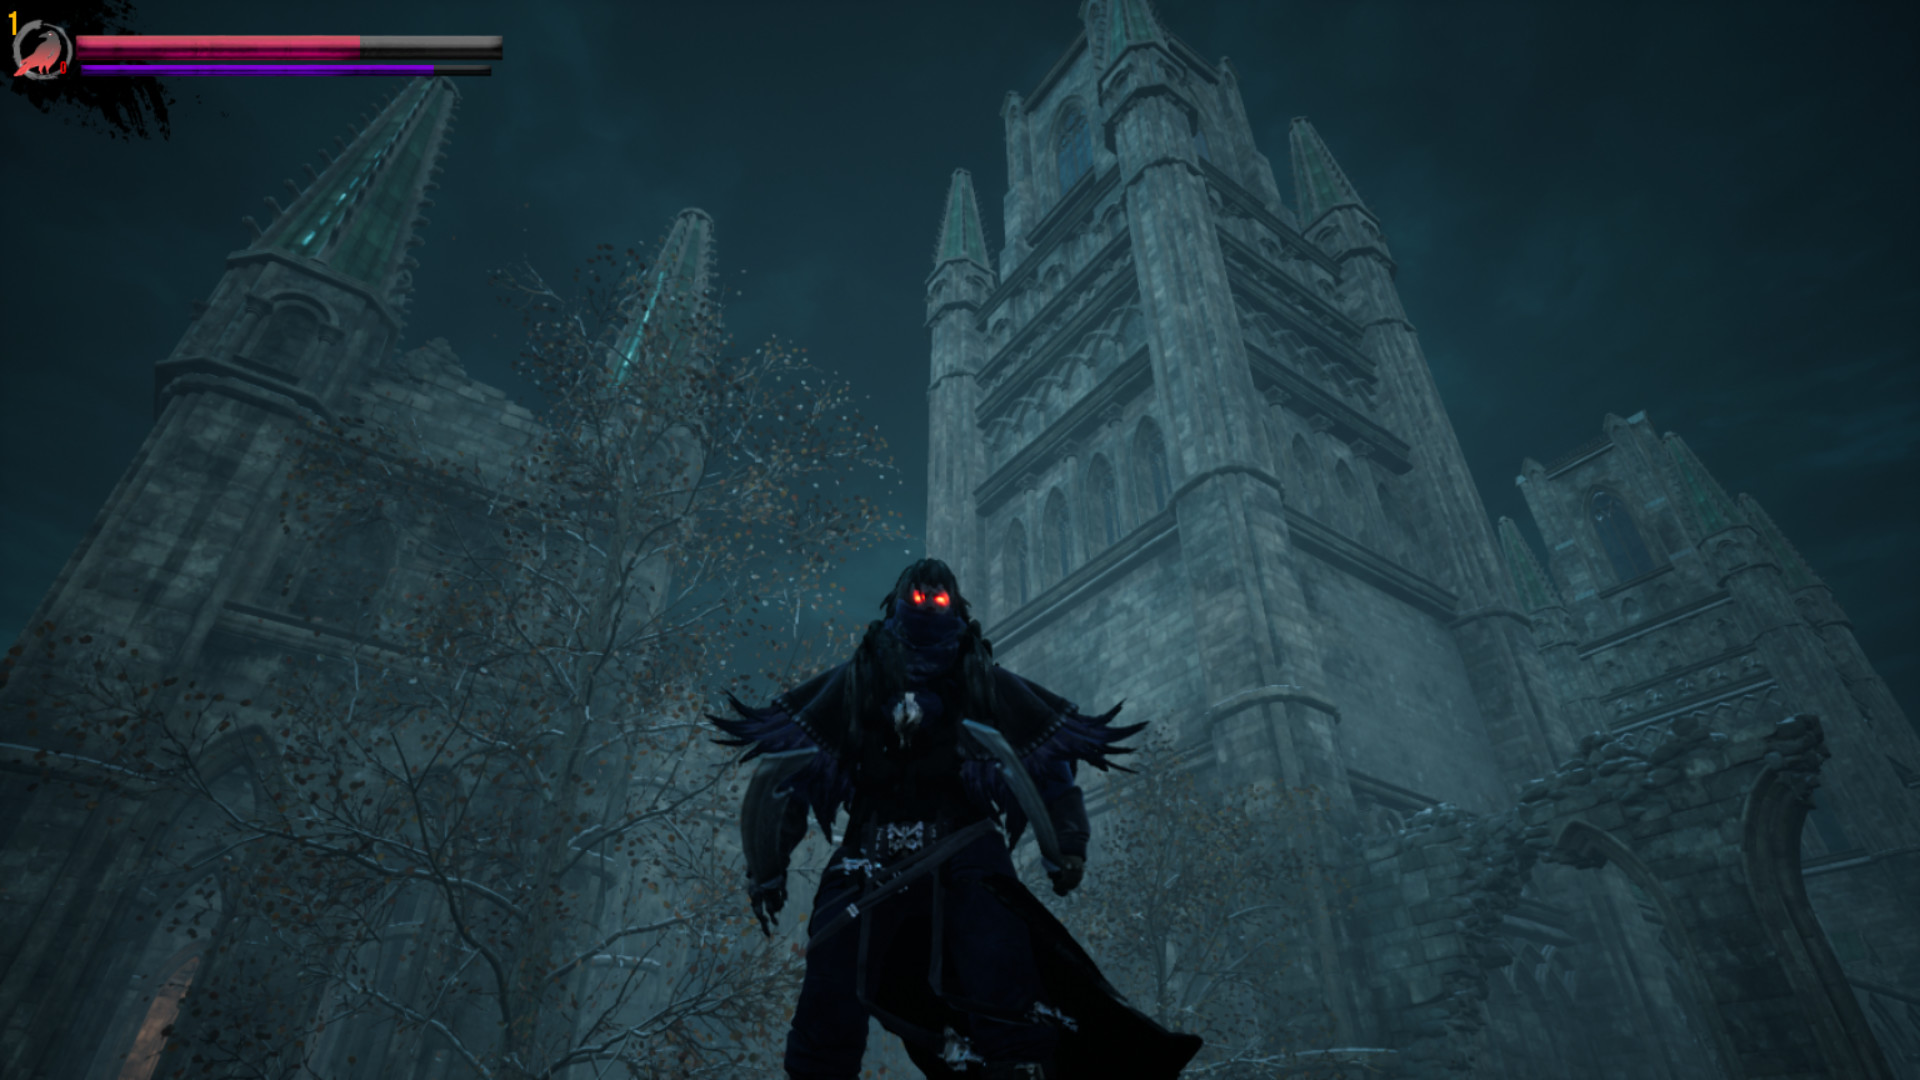 Vampirem screenshot